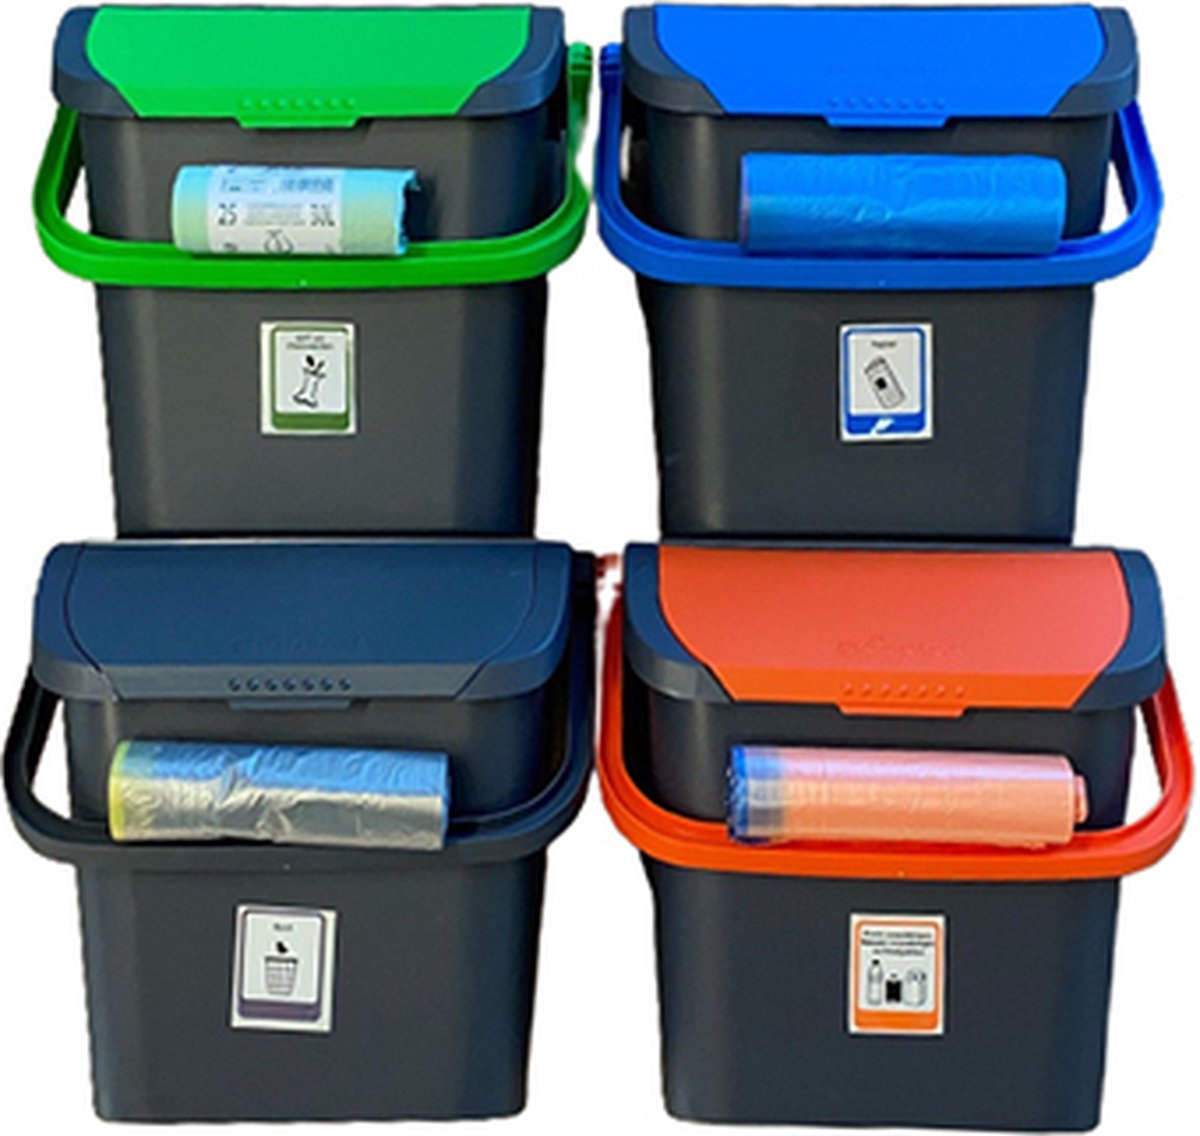 Set met 4 afvalbakken + stickers + 4 rollen afvalzakken - Afvalscheidingsbak - afvalscheiding afvalbak - afval scheiden prullenbak - stickers - afvalzakken - 4 stuks - Malpie - sorteer afvalbak - sorteer bak